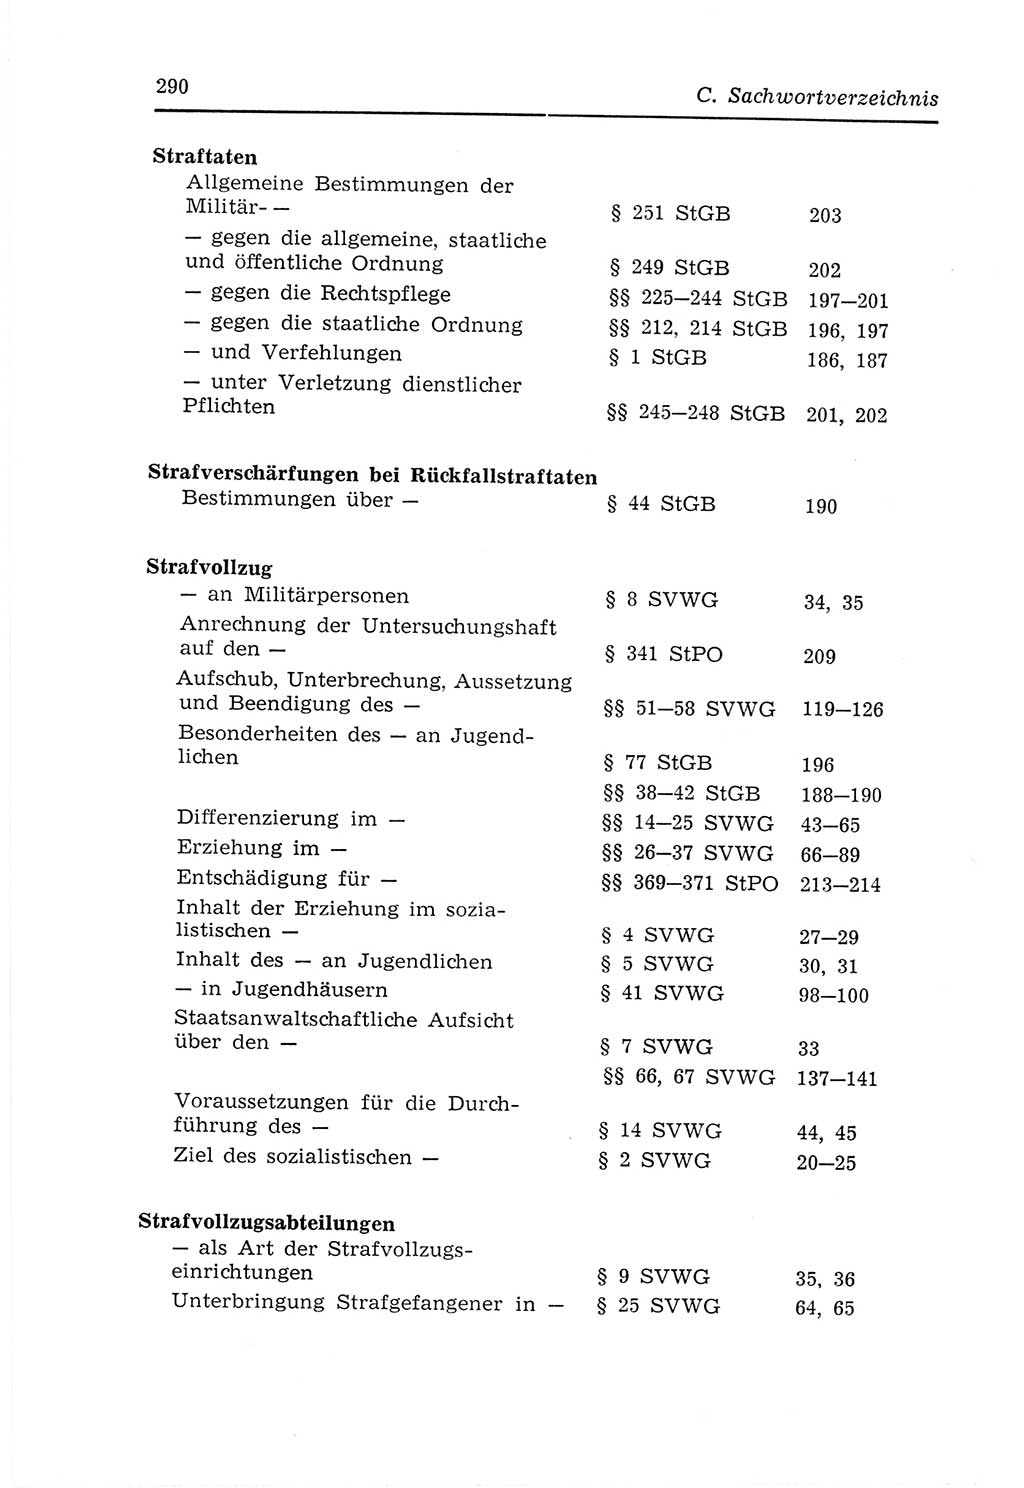 Strafvollzugs- und Wiedereingliederungsgesetz (SVWG) der Deutschen Demokratischen Republik (DDR) 1968, Seite 290 (SVWG DDR 1968, S. 290)